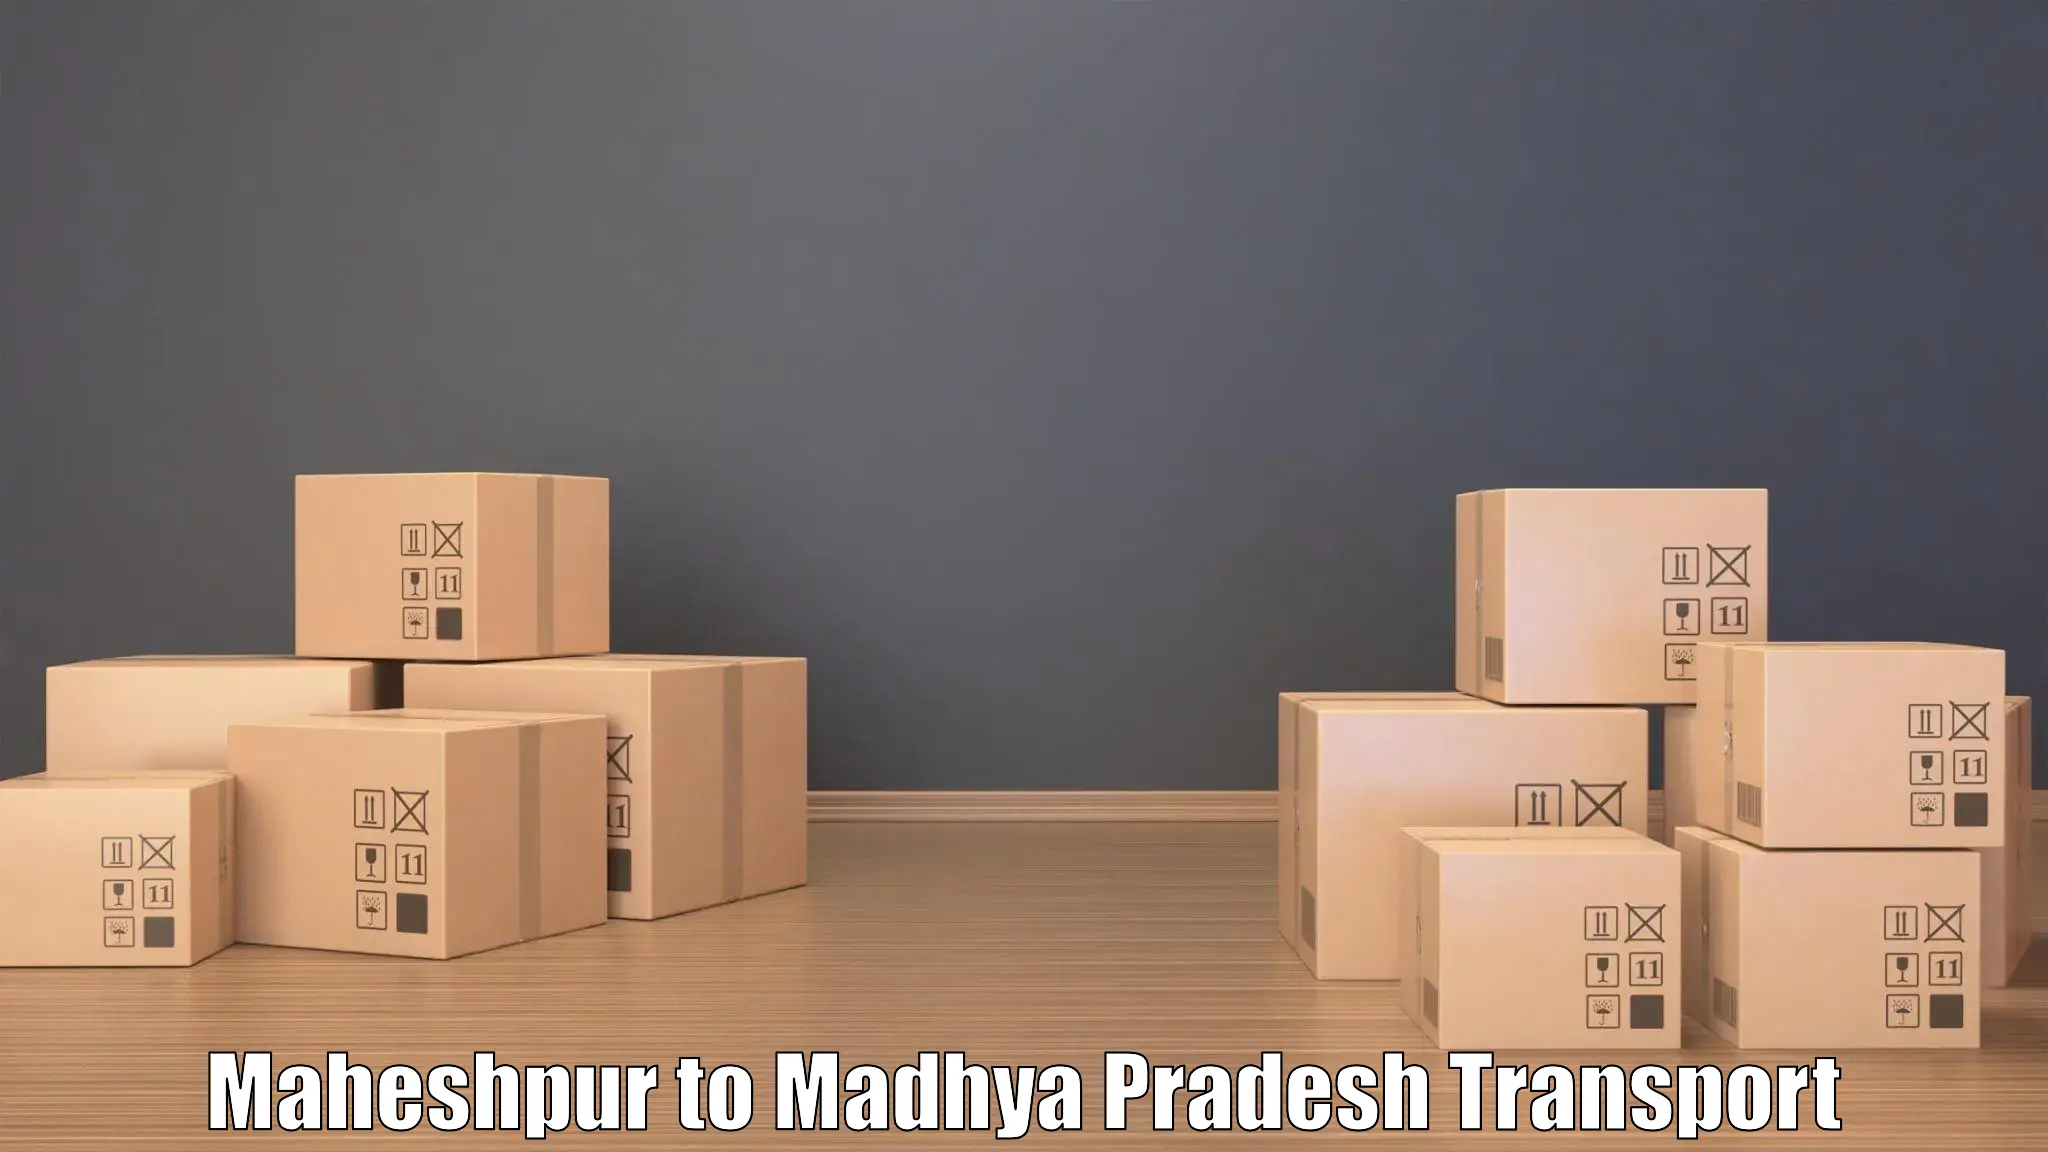 Express transport services Maheshpur to Jaisinghnagar